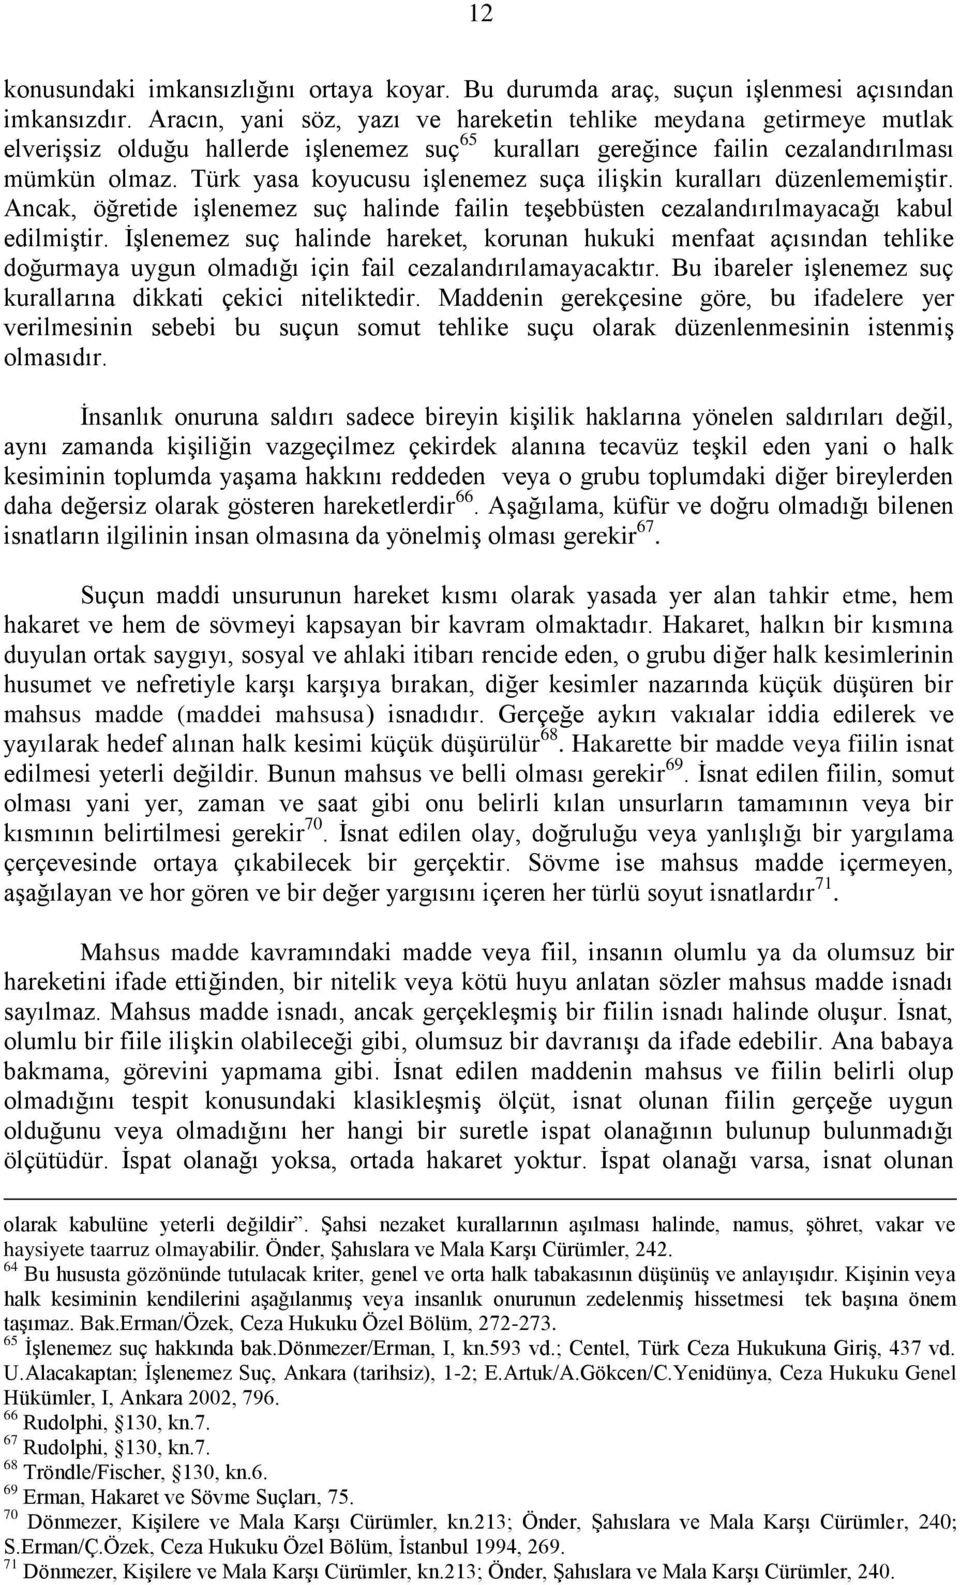 Türk yasa koyucusu işlenemez suça ilişkin kuralları düzenlememiştir. Ancak, öğretide işlenemez suç halinde failin teşebbüsten cezalandırılmayacağı kabul edilmiştir.